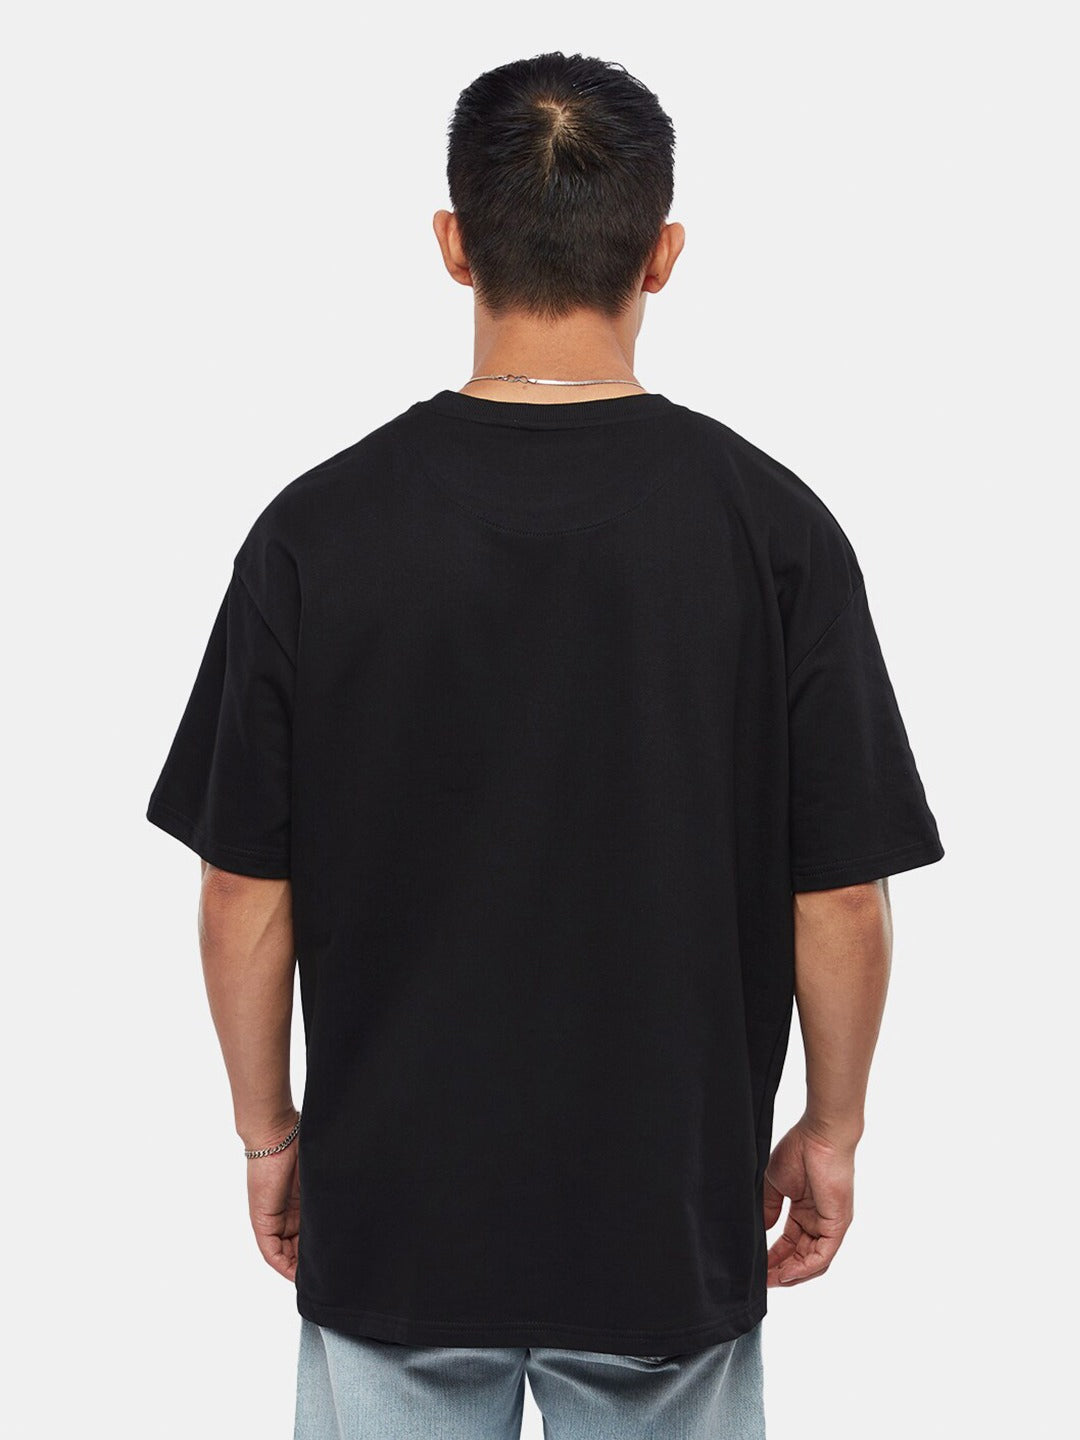 Plain Black Oversized T-Shirt